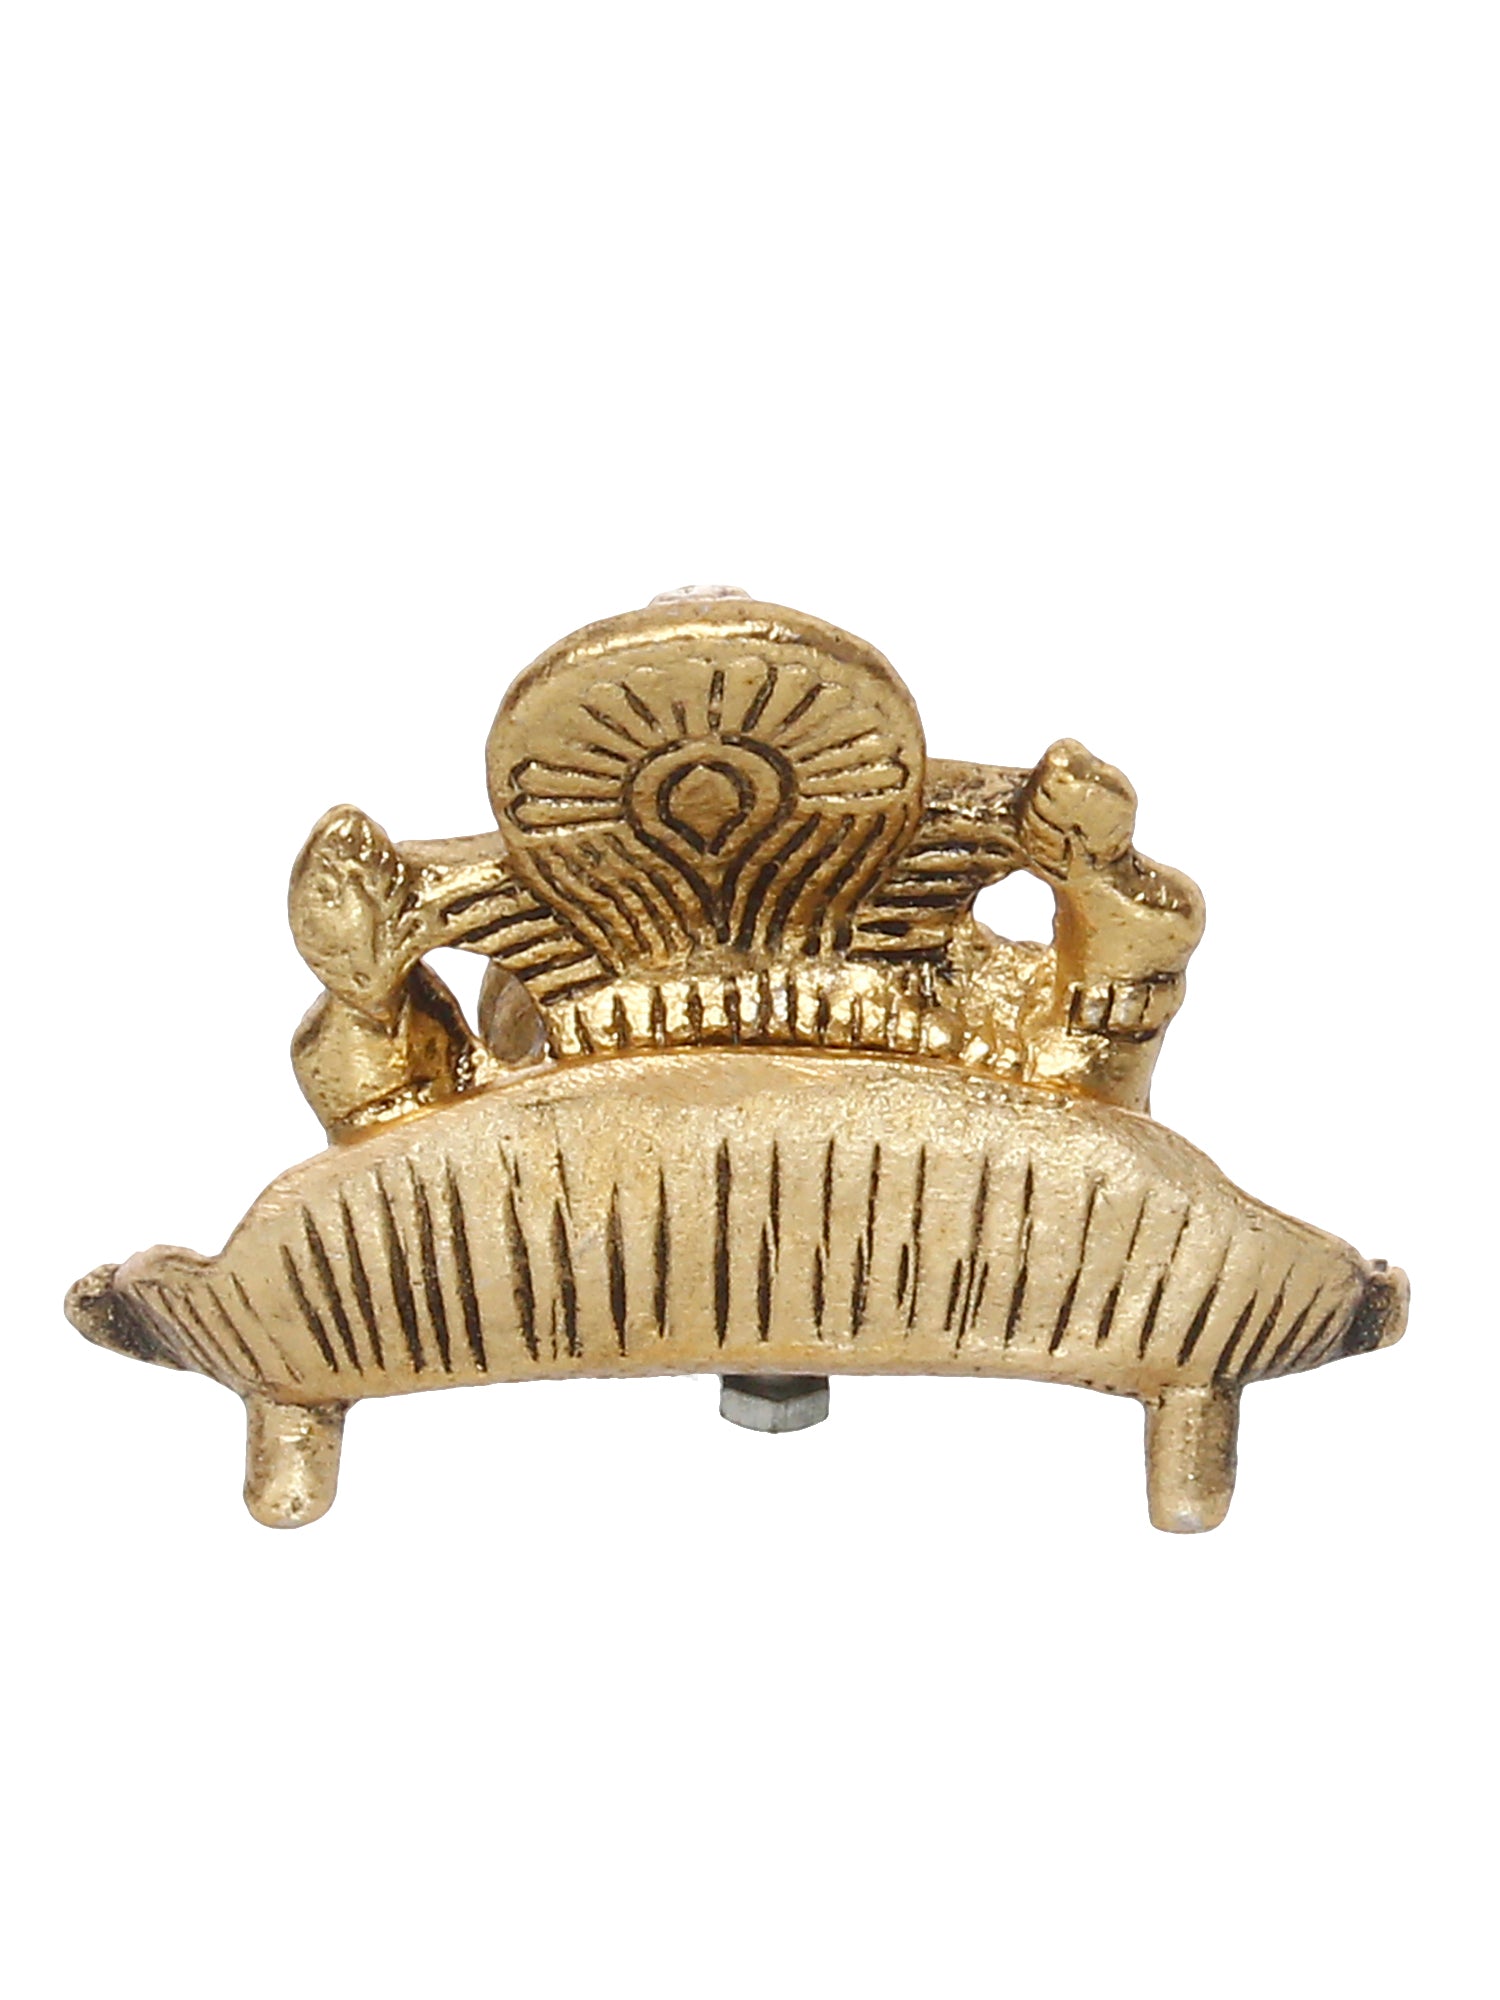 Golden Metal Handcrafted Lord Ganesha Idol with Diya on Leaf 5